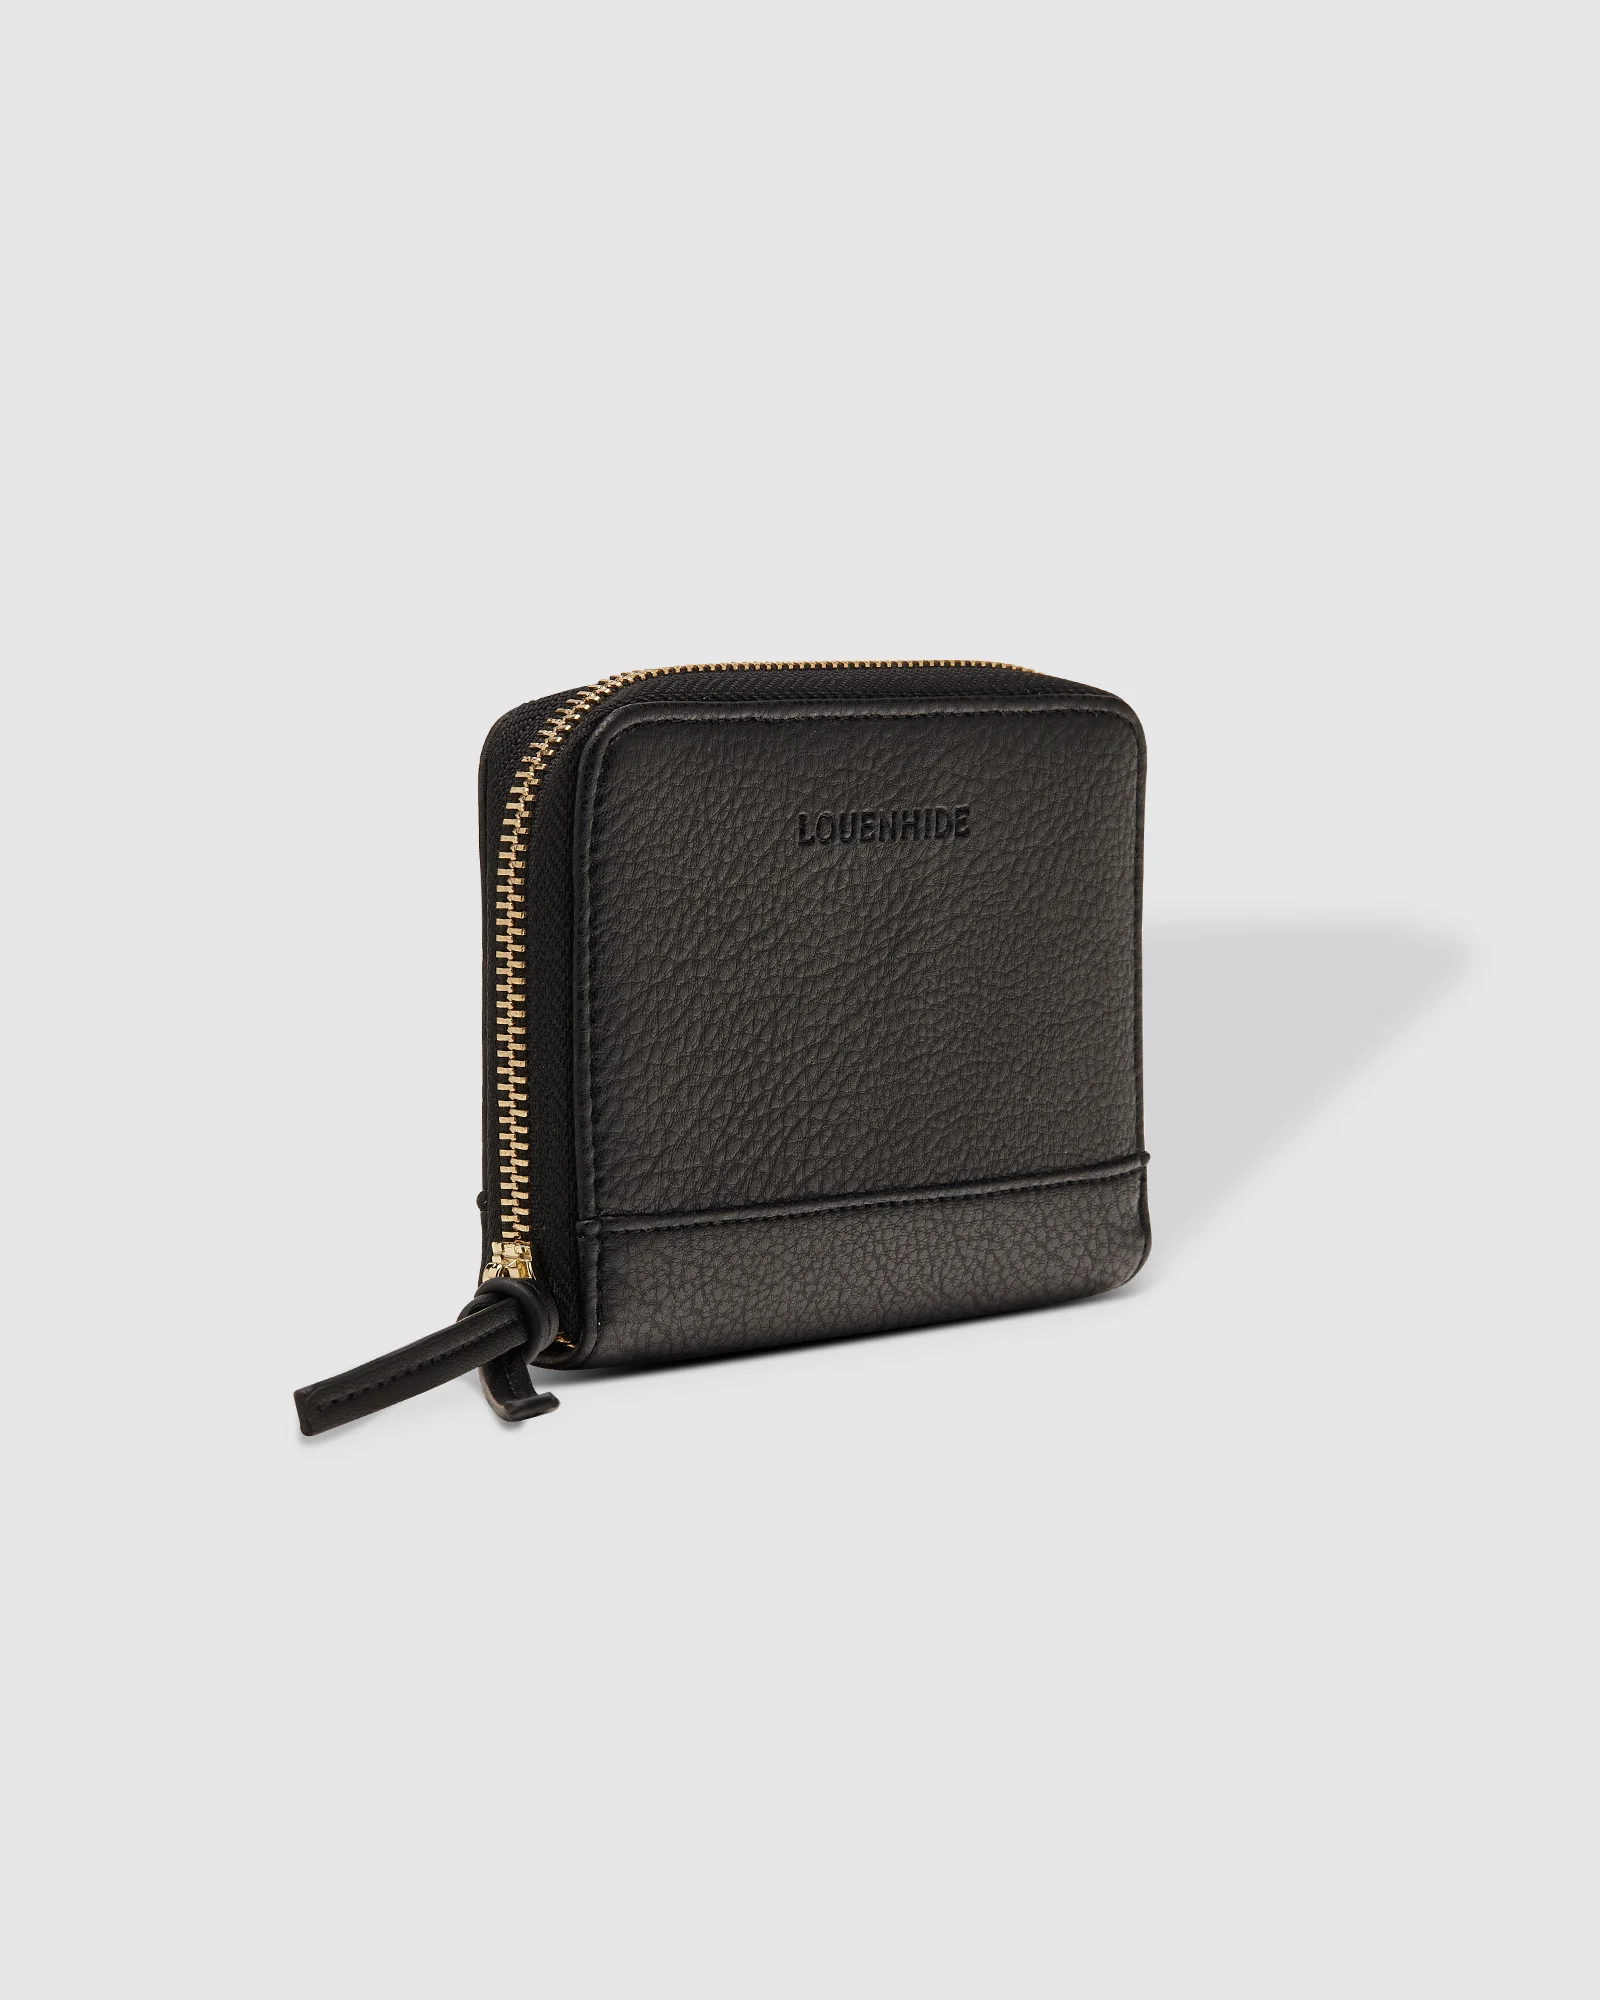 Louenhide Aria Knot Wallet - Black Accessories - Other Accessories - Handbags & Wallets by Louenhide | Grace the Boutique